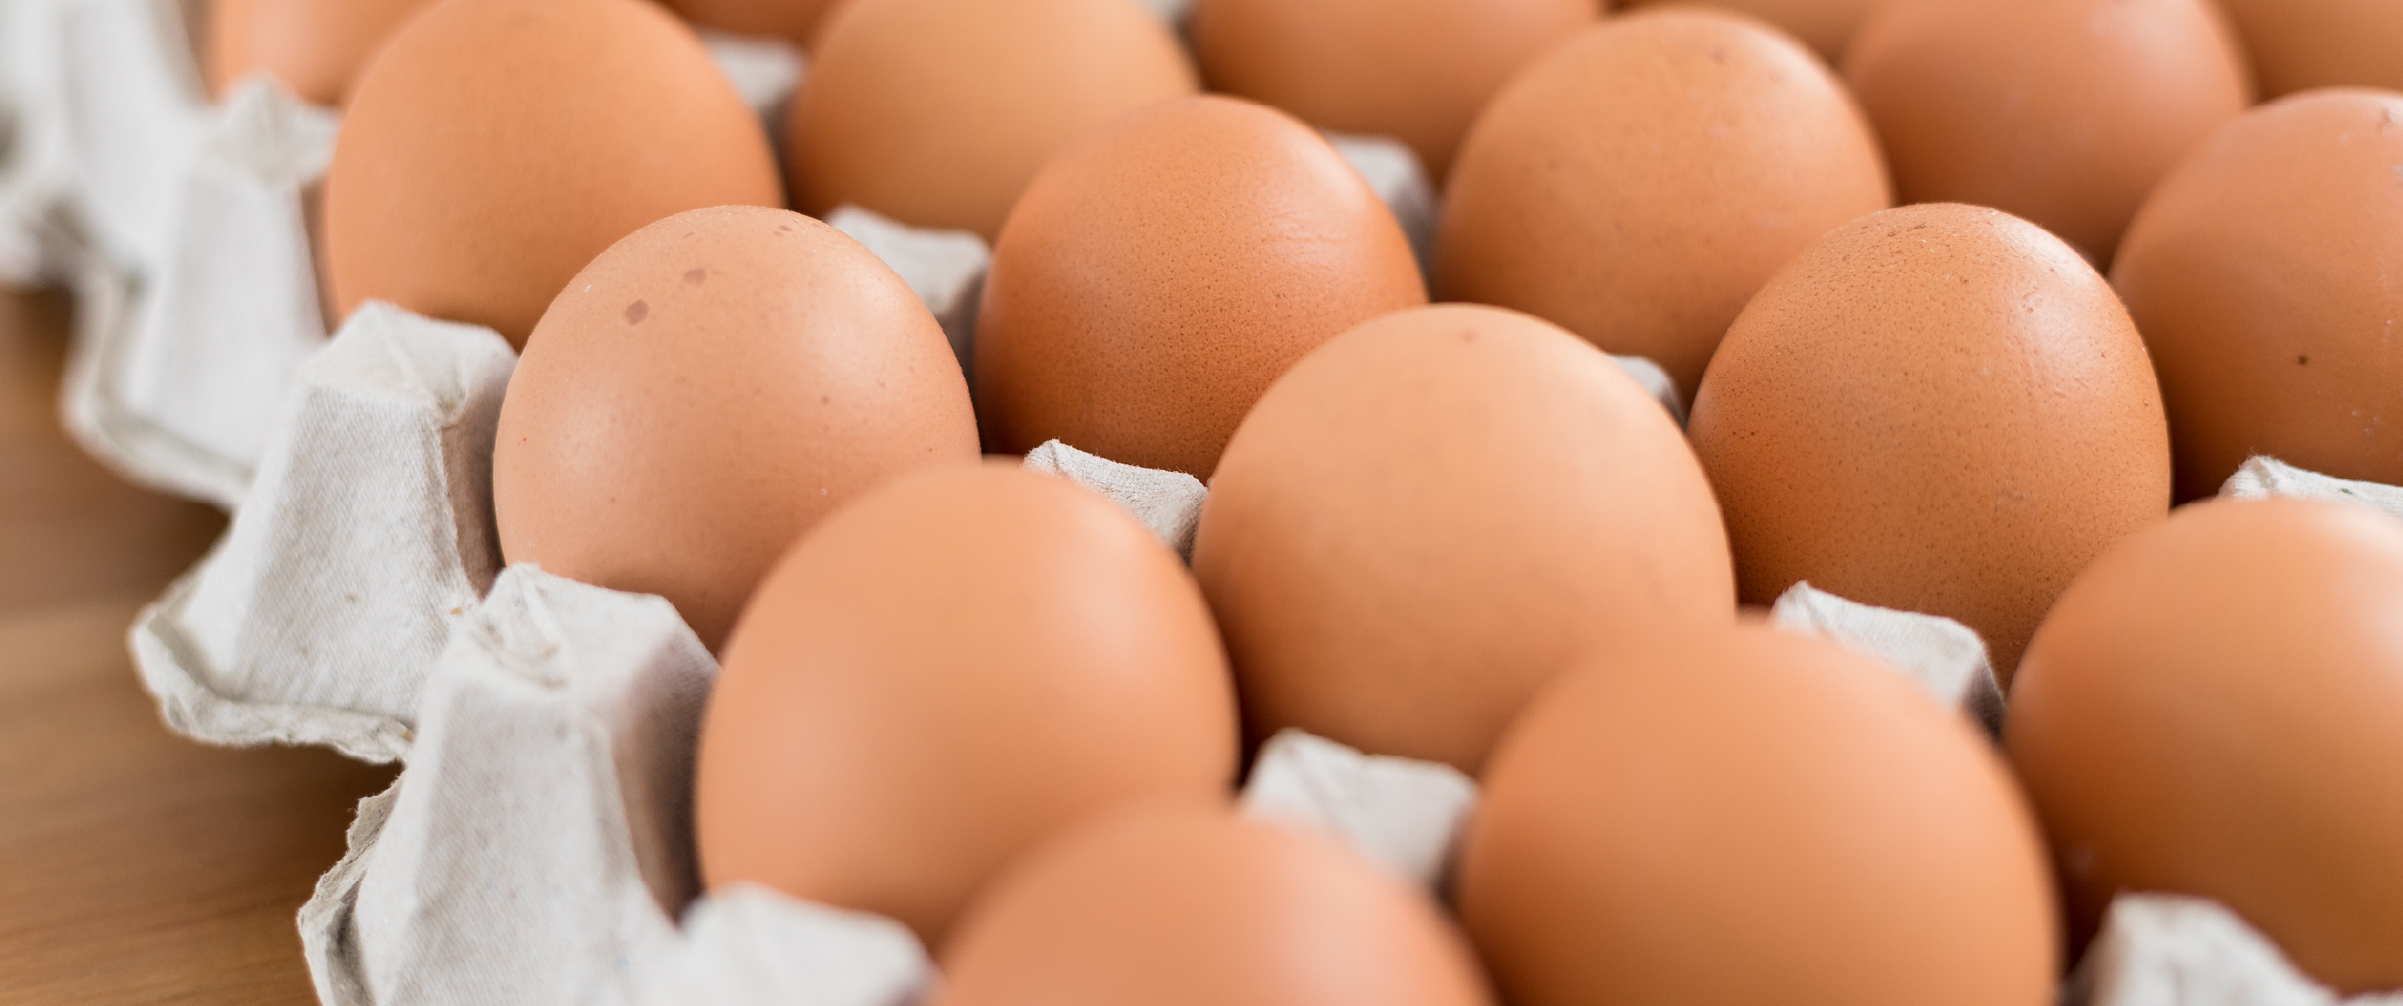 Empresa eleva padrão de qualidade com novo método de desinfecção de cascas de ovos